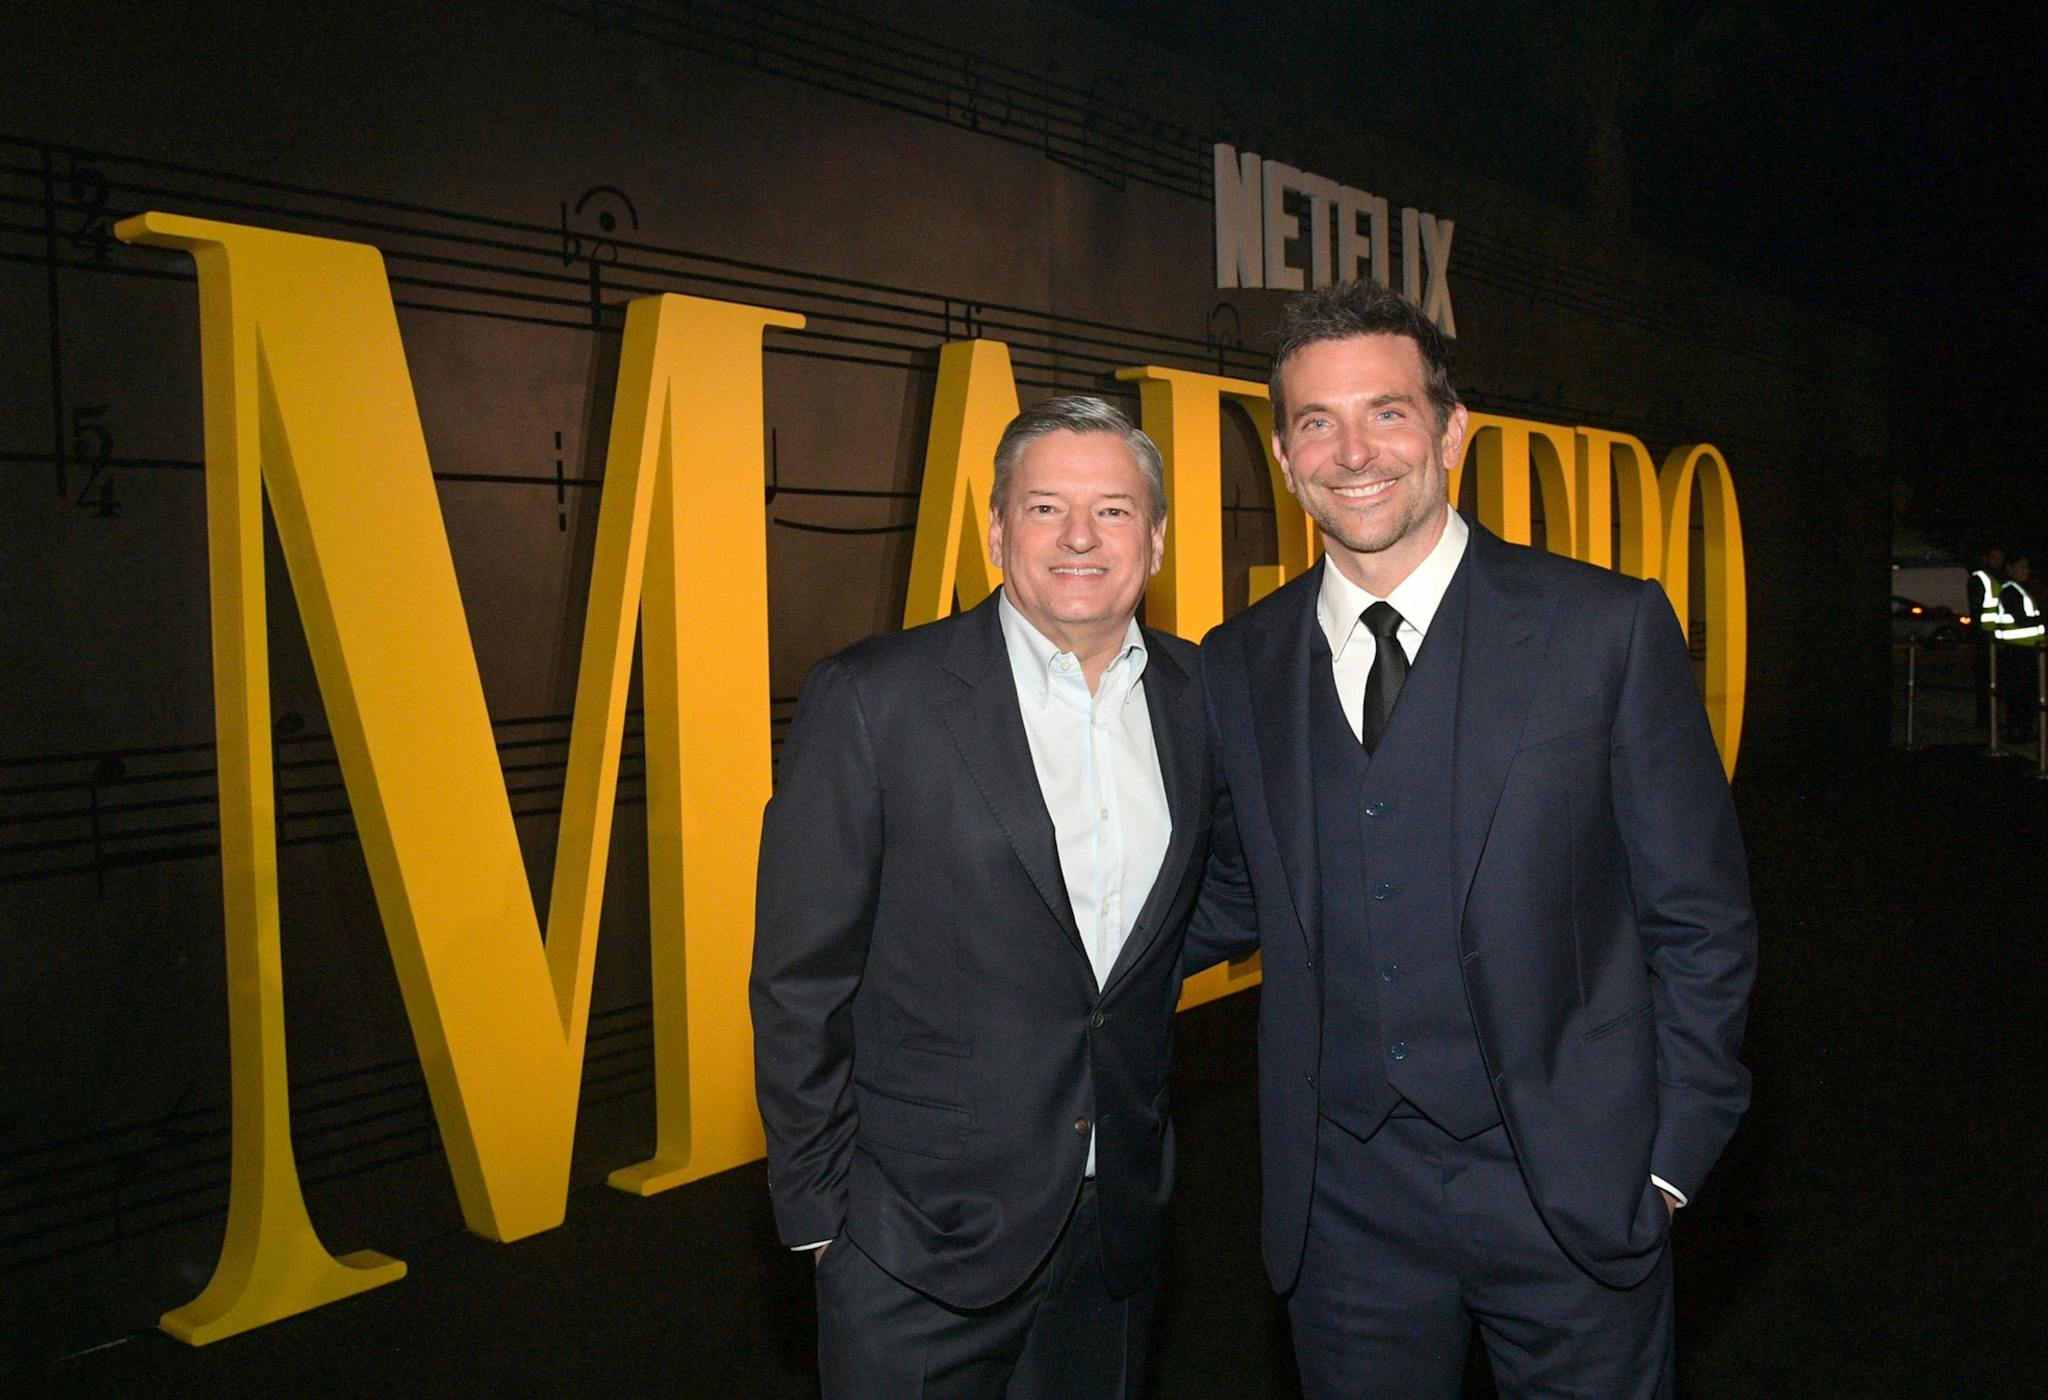 El co-Ceo de Netflix Ted Sarandos junto al actor y director Bradley Cooper durante la presentación de 'Maestro¡ en Los Angeles